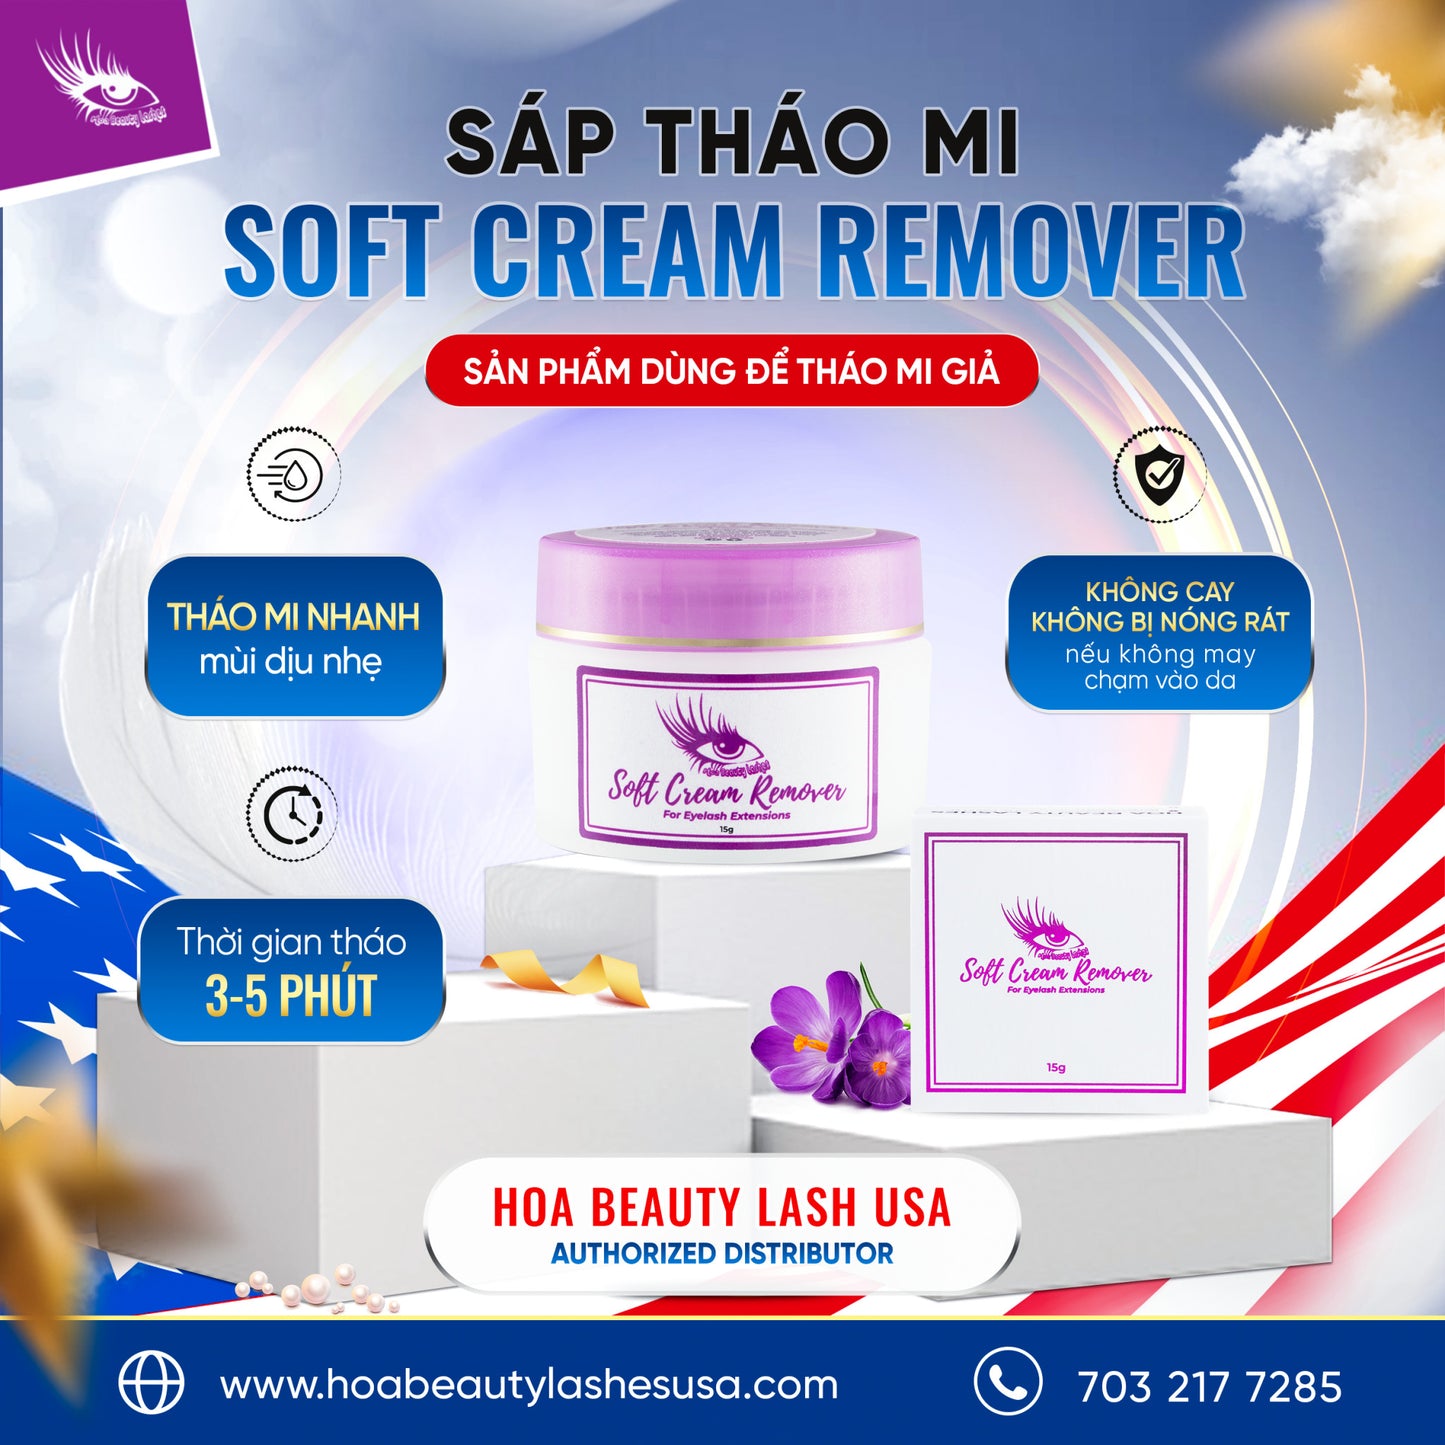 Soft Cream Remover